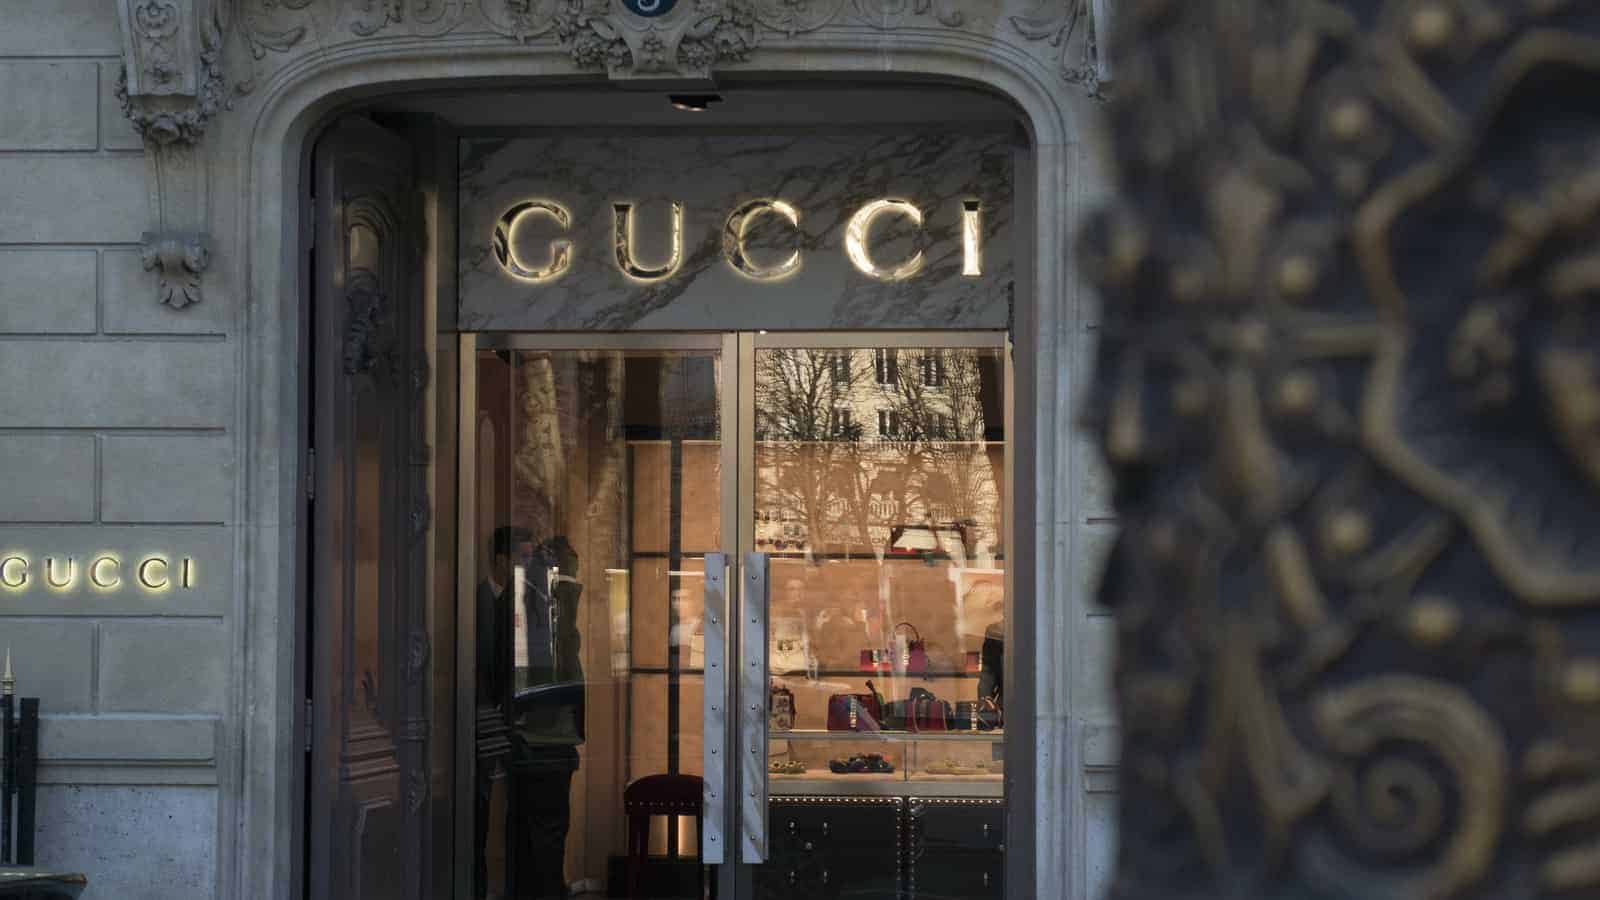 A renomada marca de luxo Gucci aceitará pagamentos de Bitcoin e Ethereum nos EUA